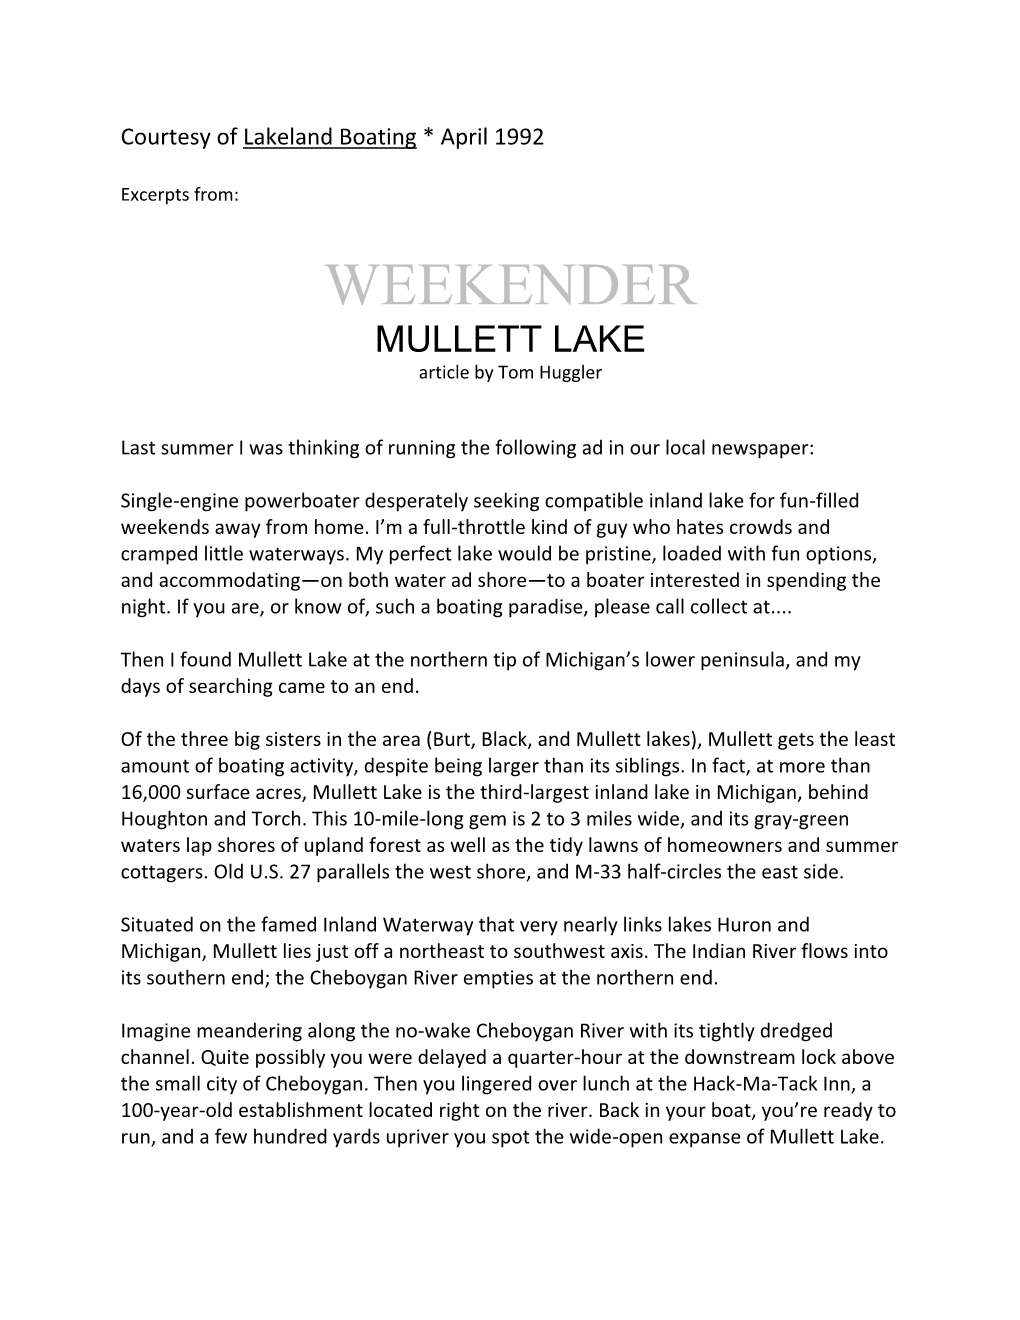 WEEKENDER: Mullett Lake